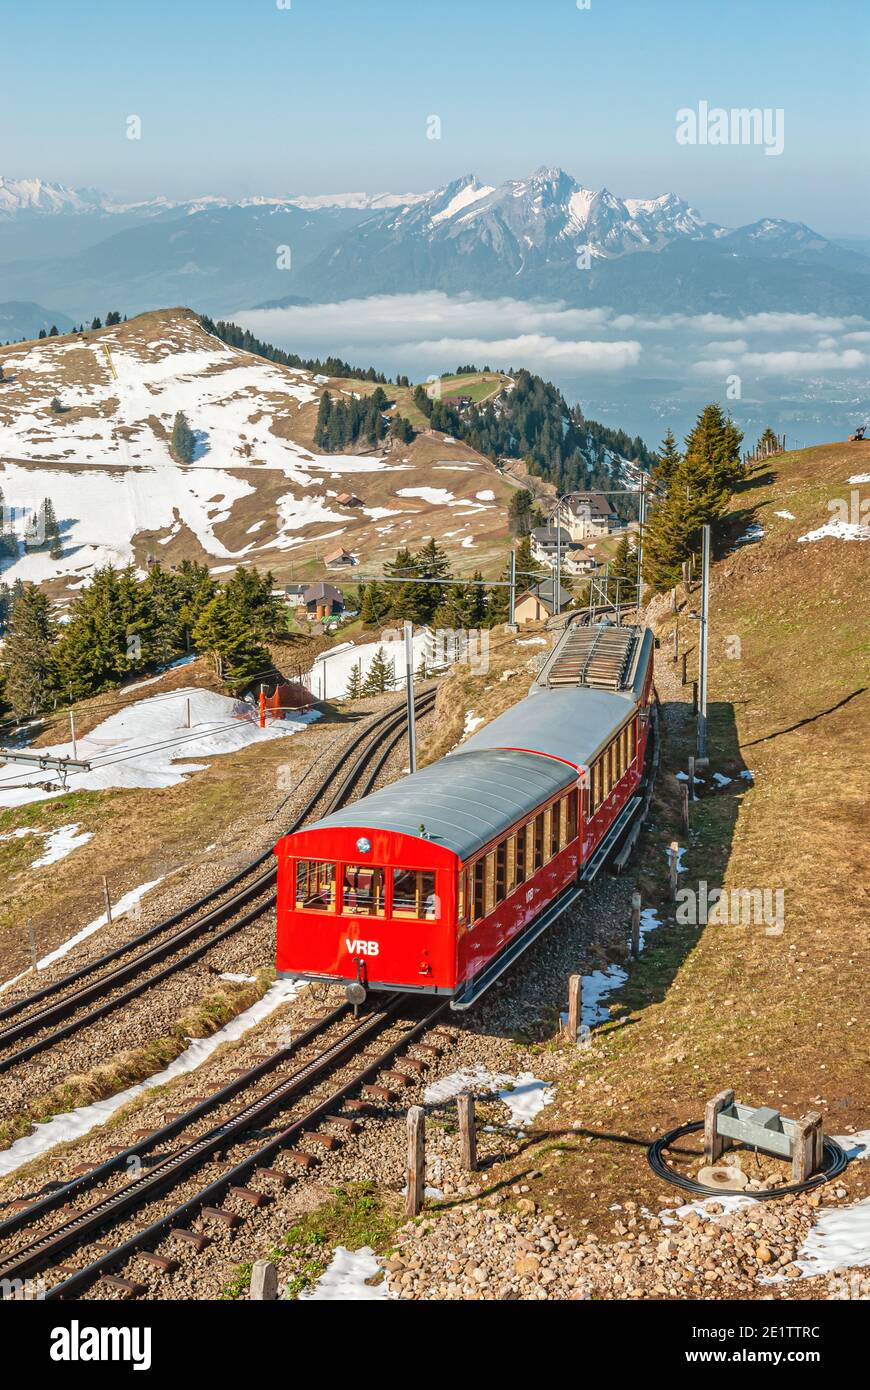 Treno Rigi alla stazione di Rigi Kulm, Canton Svitto, Svizzera Foto Stock